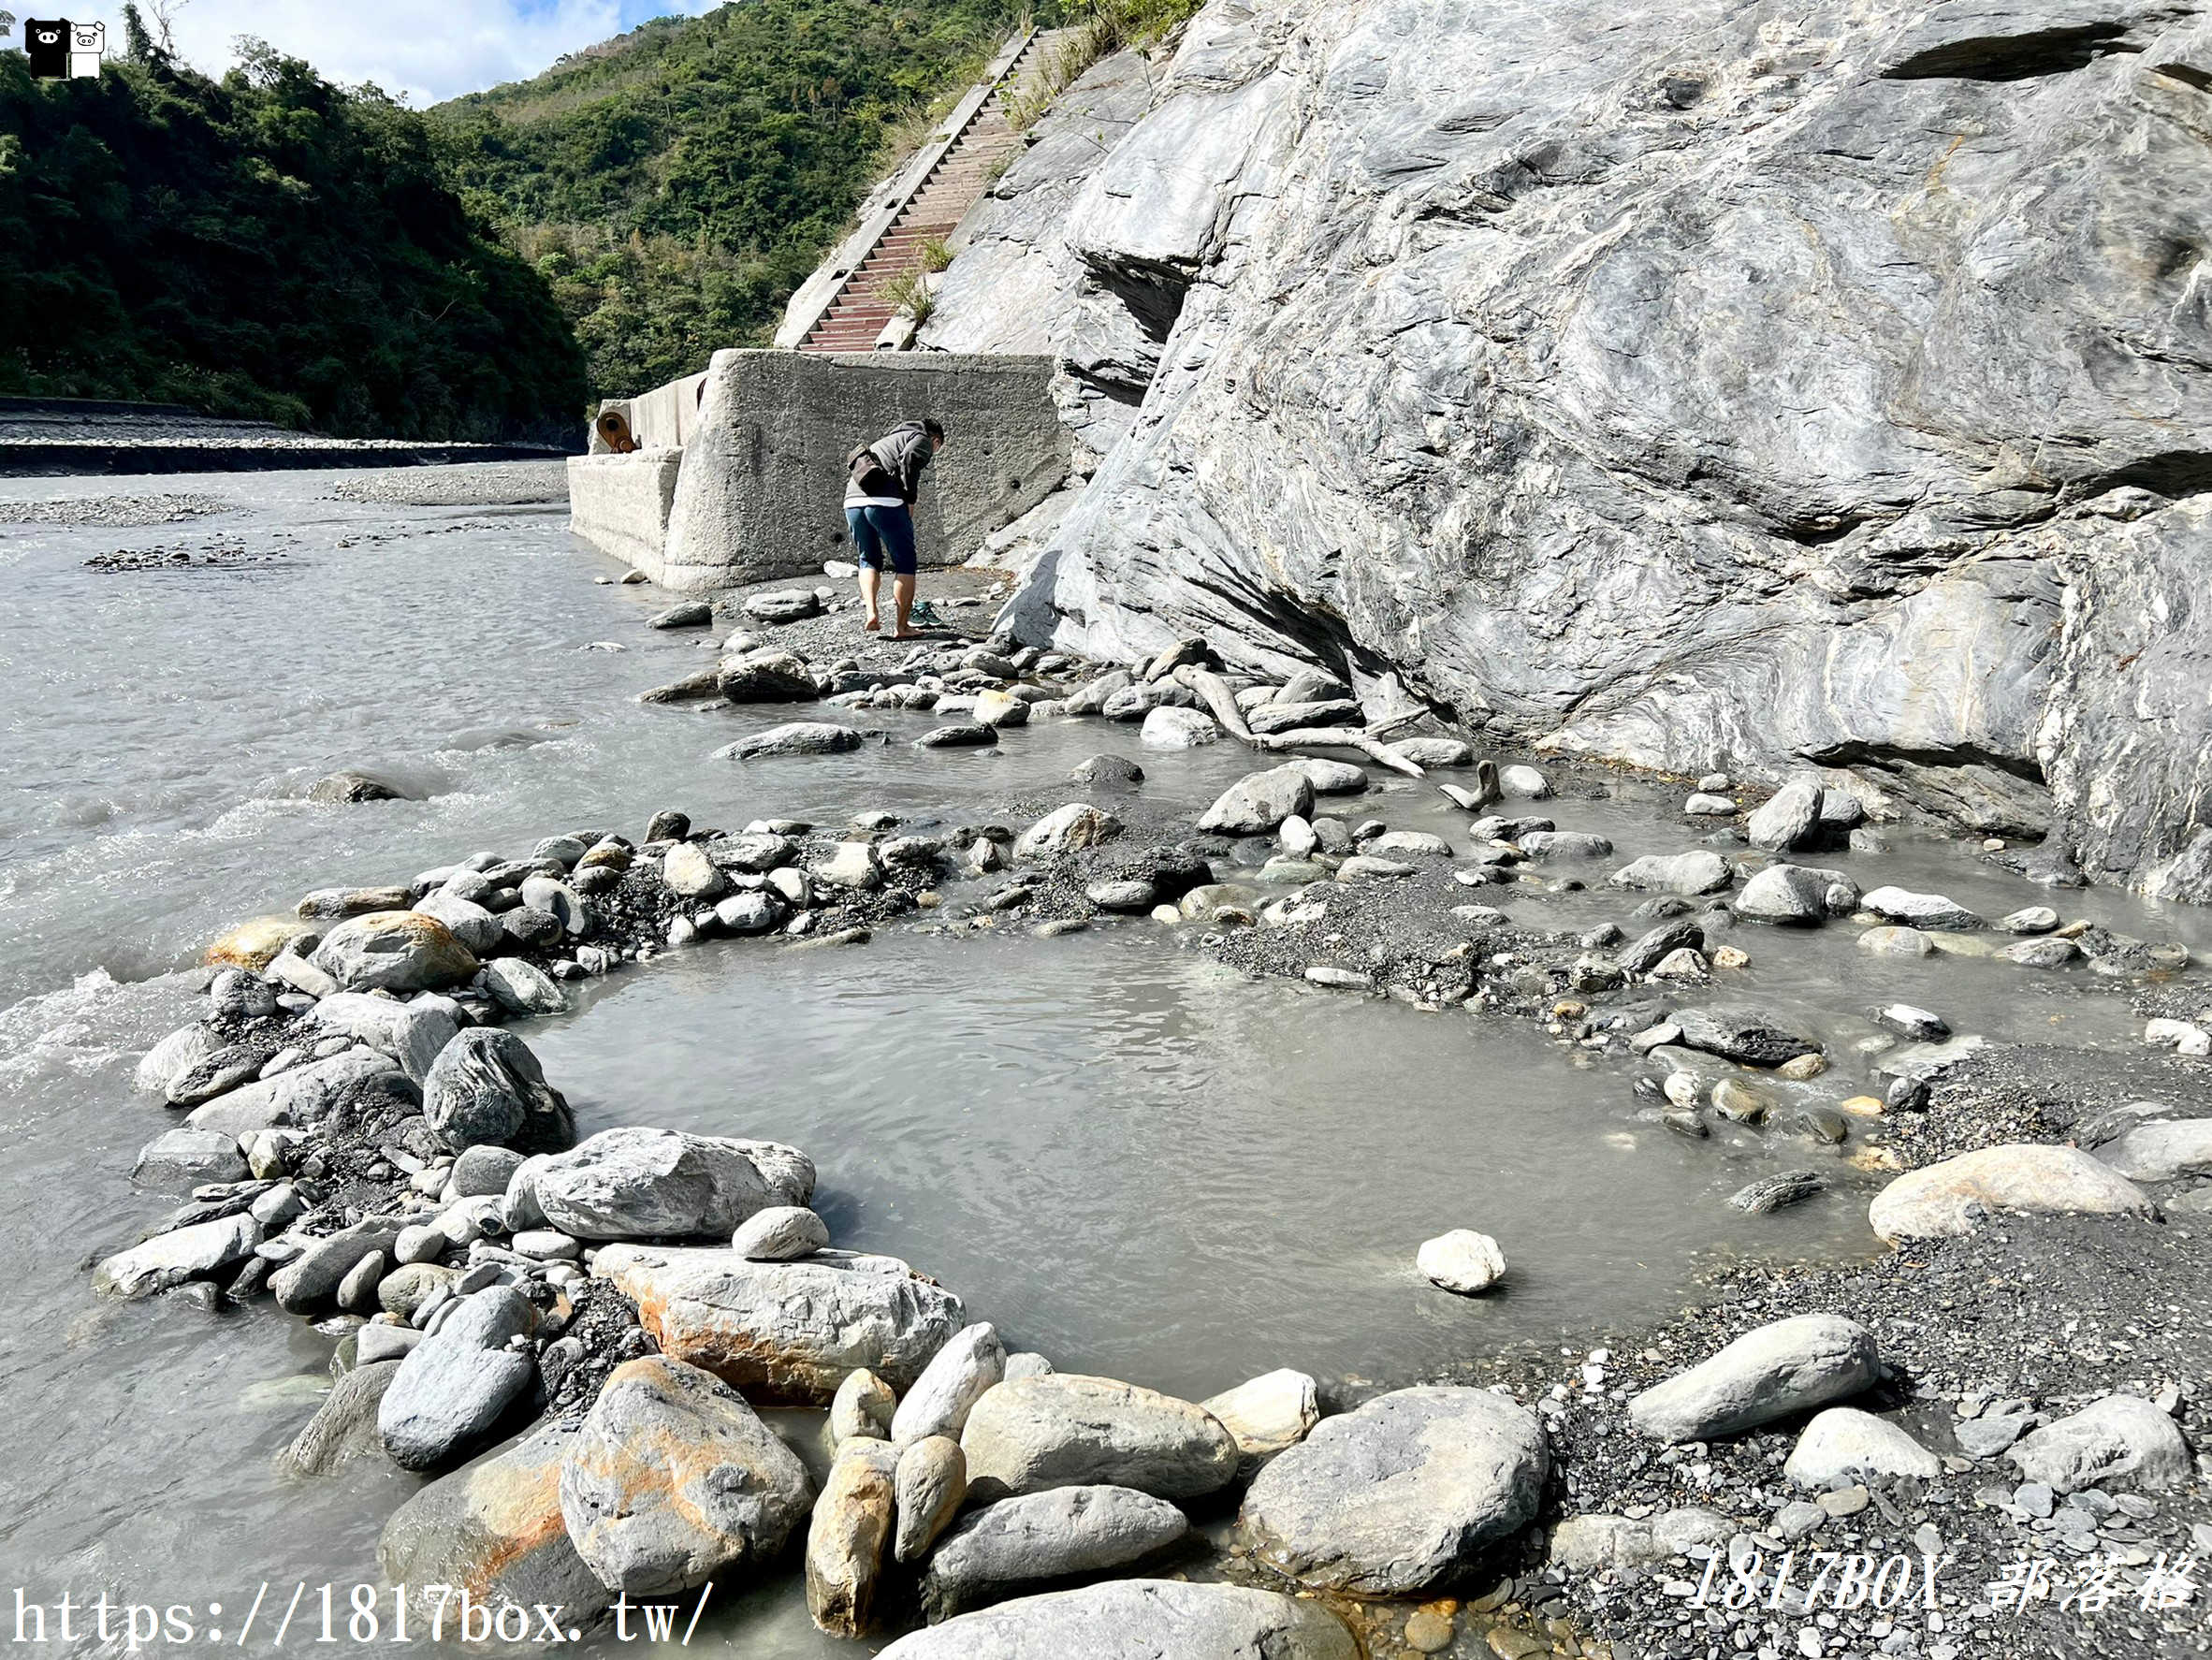 【台東。延平】紅葉紅橋野溪溫泉。台灣最容易親近的露天溫泉之一 @1817BOX部落格